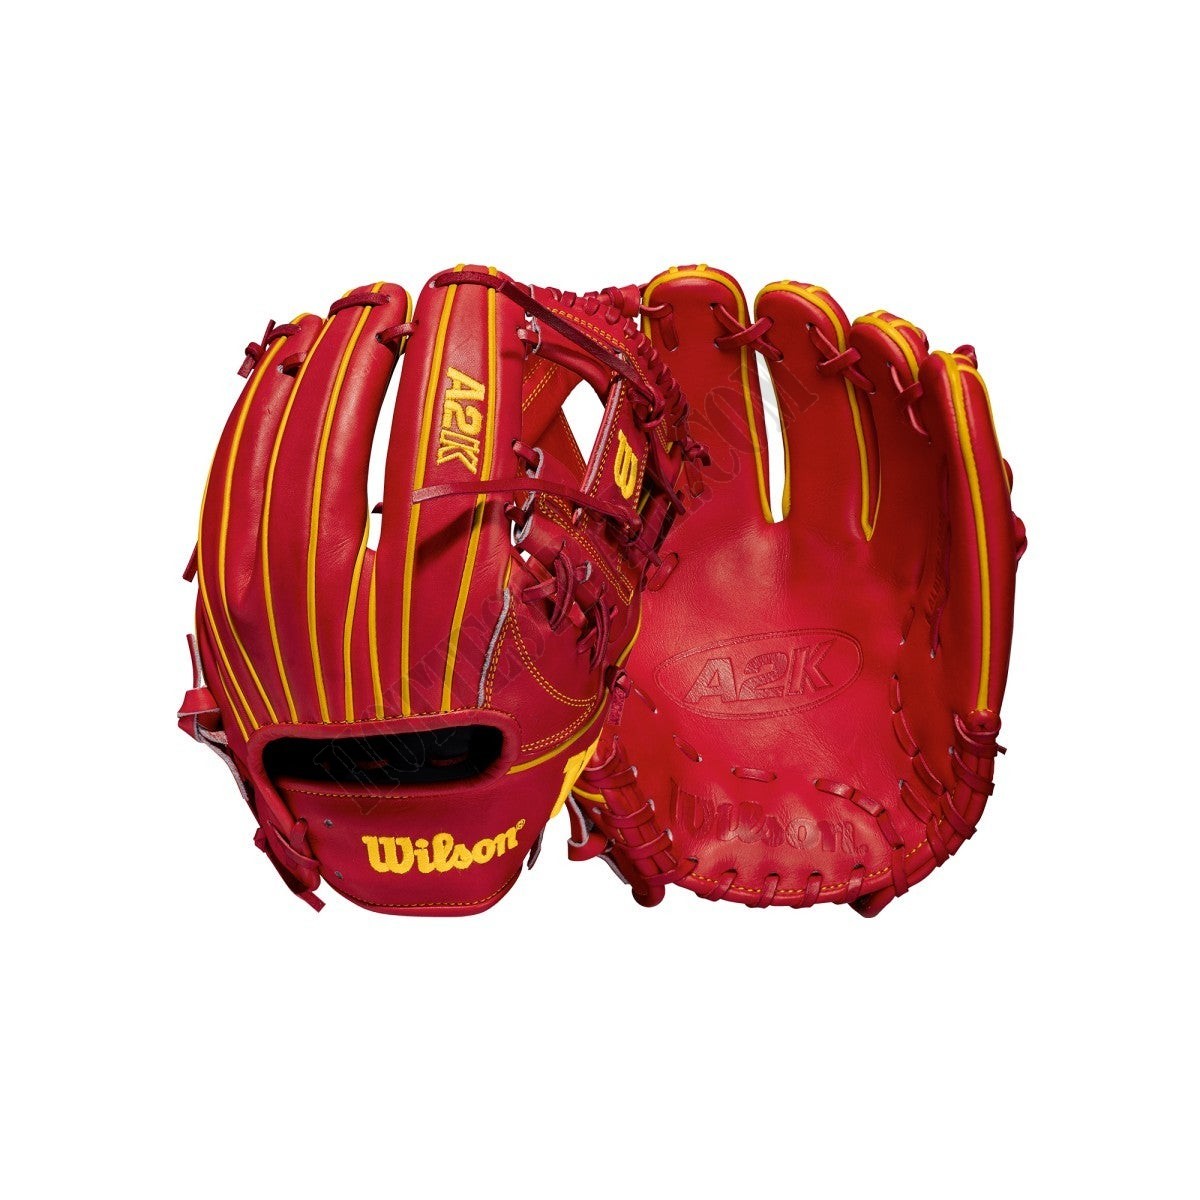 2021 A2K OA1 GM 11.5" Infield Baseball Glove ● Wilson Promotions - 2021 A2K OA1 GM 11.5" Infield Baseball Glove ● Wilson Promotions